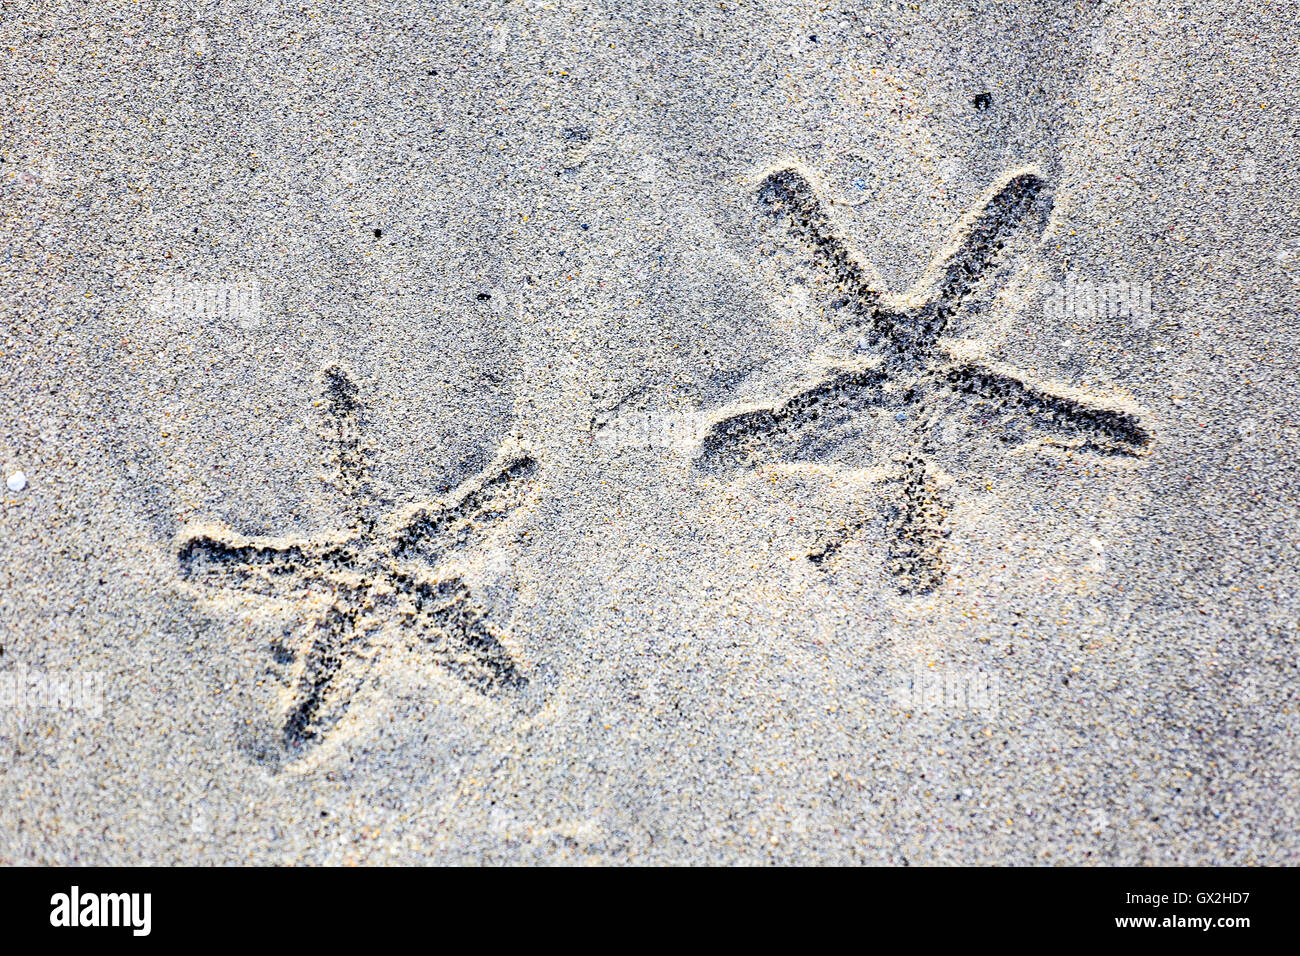 Esquema de dos en forma de estrella de mar en una playa de arena. Foto de stock